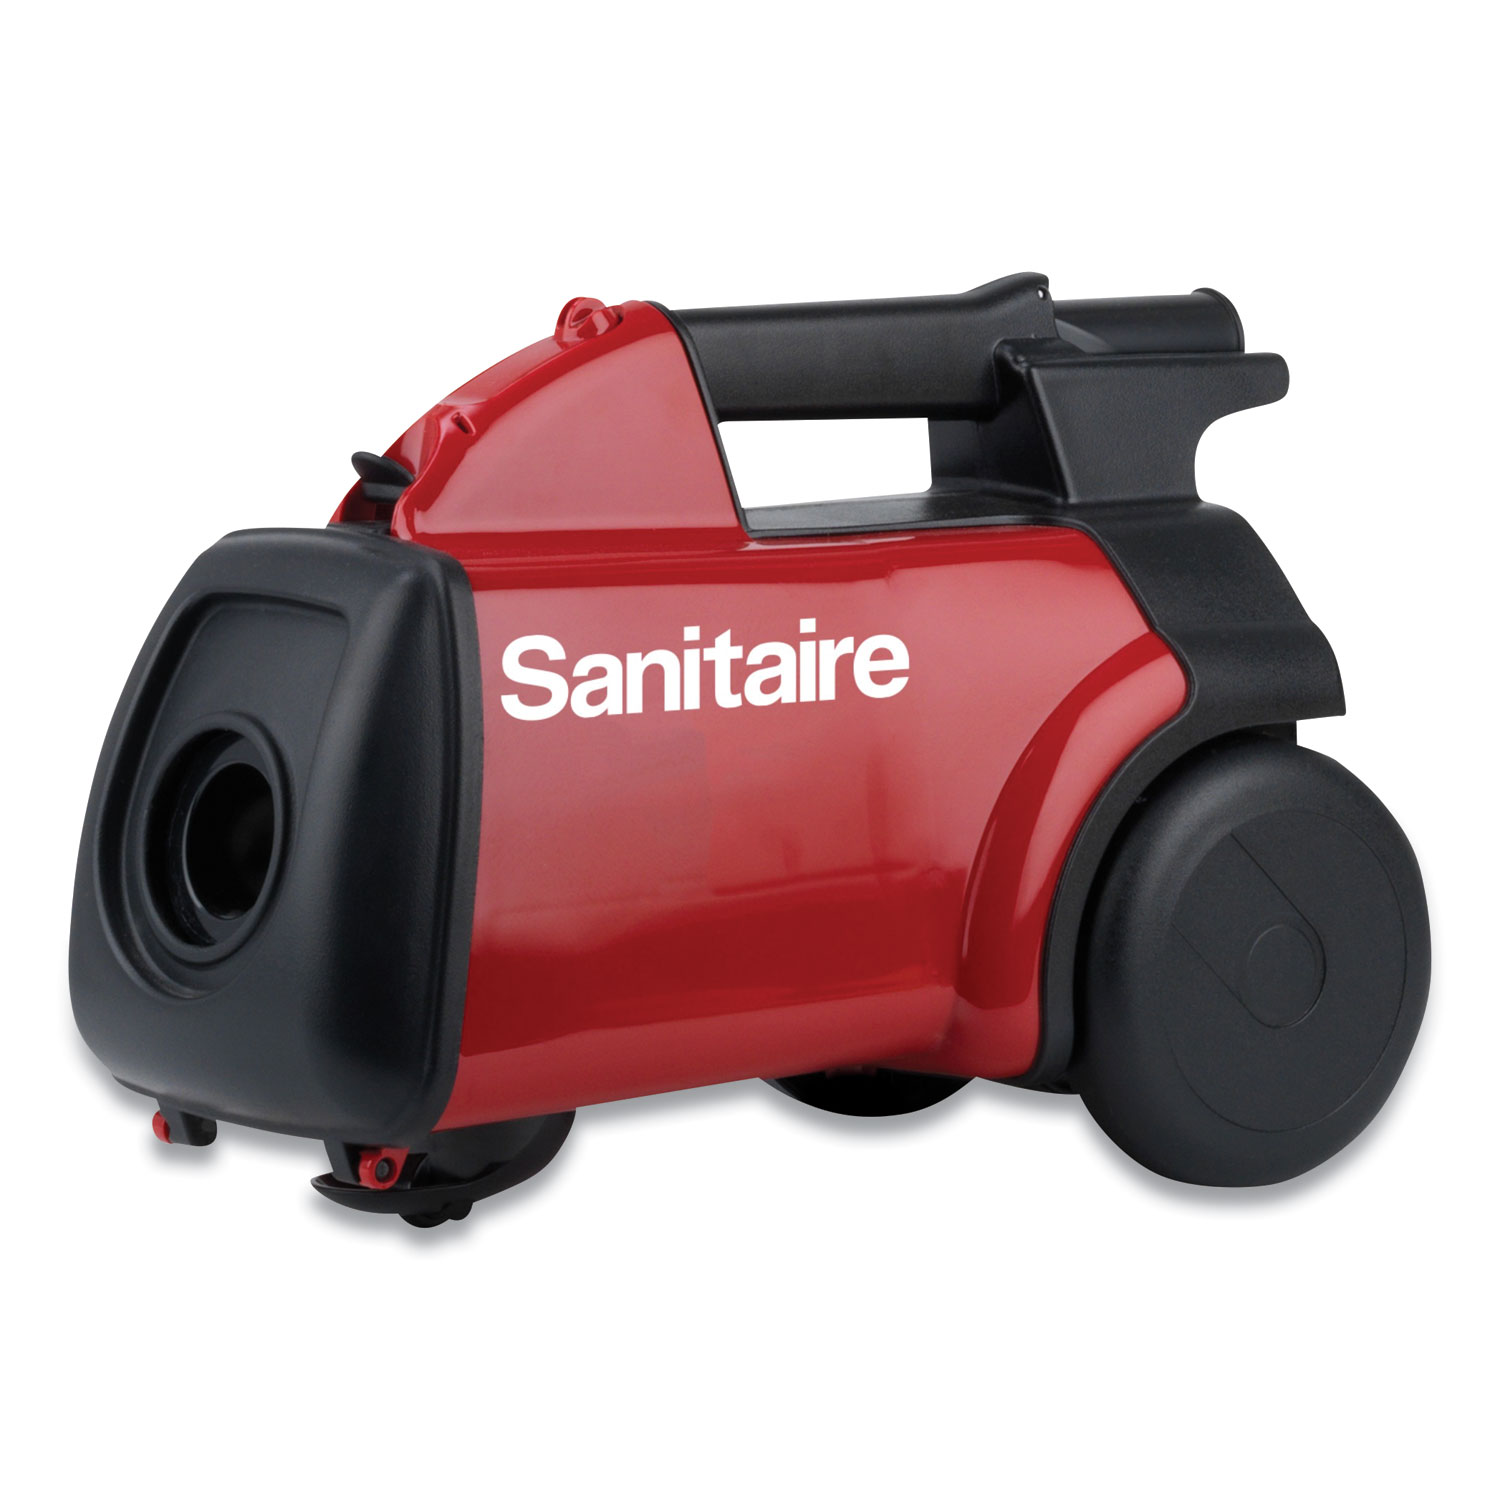  Sanitaire SC3683D EXTEND Canister Vacuum SC3683D, Red (EURSC3683D) 